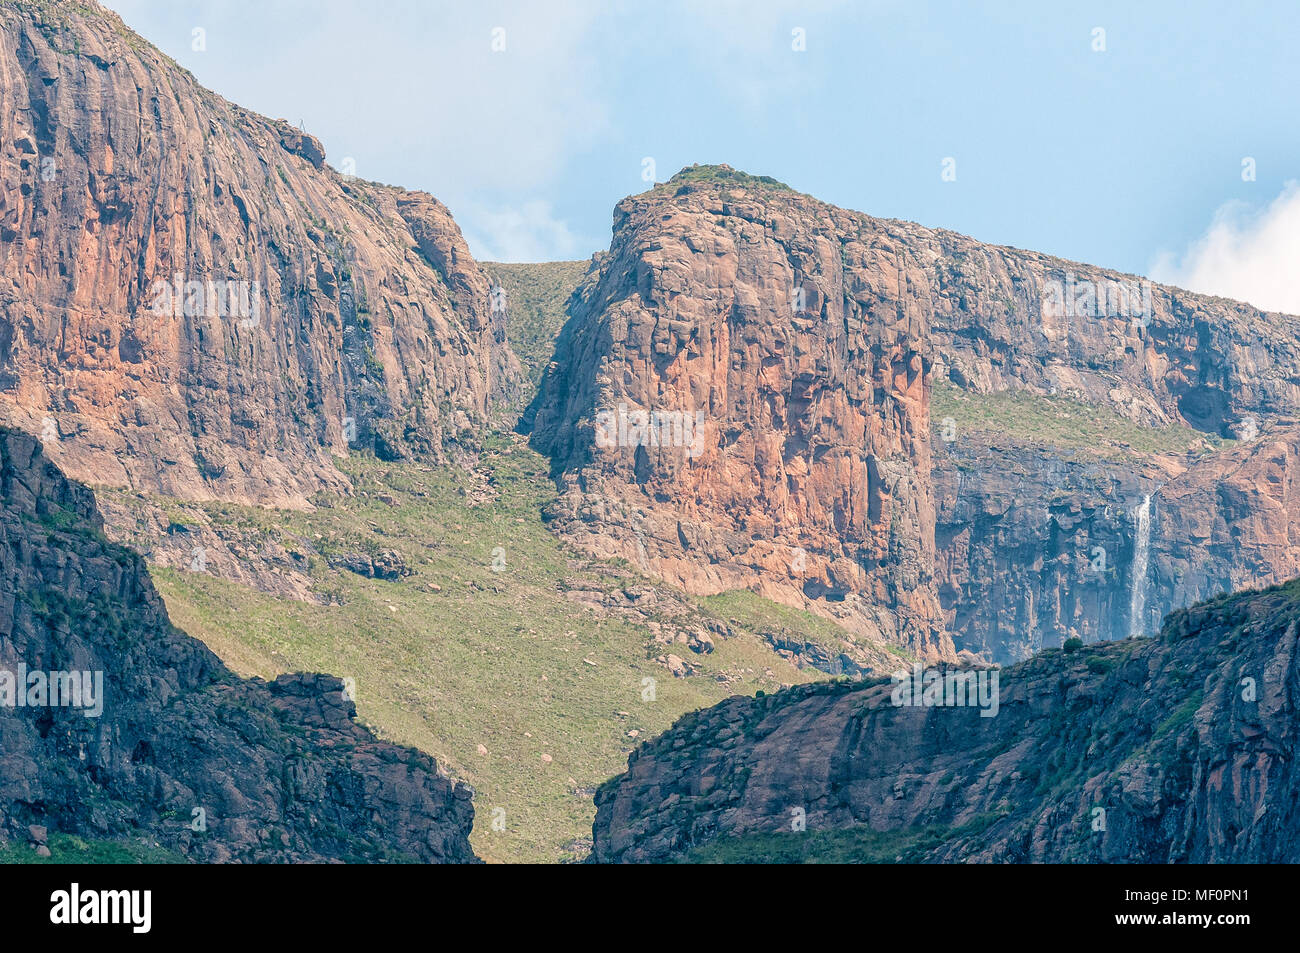 Die Sentinel Trail auf den Tugela Wasserfall klettert an die Spitze der Amphitheater über chainladders im Gully sichtbar, links, unten. Eine namenlose ... Stockfoto